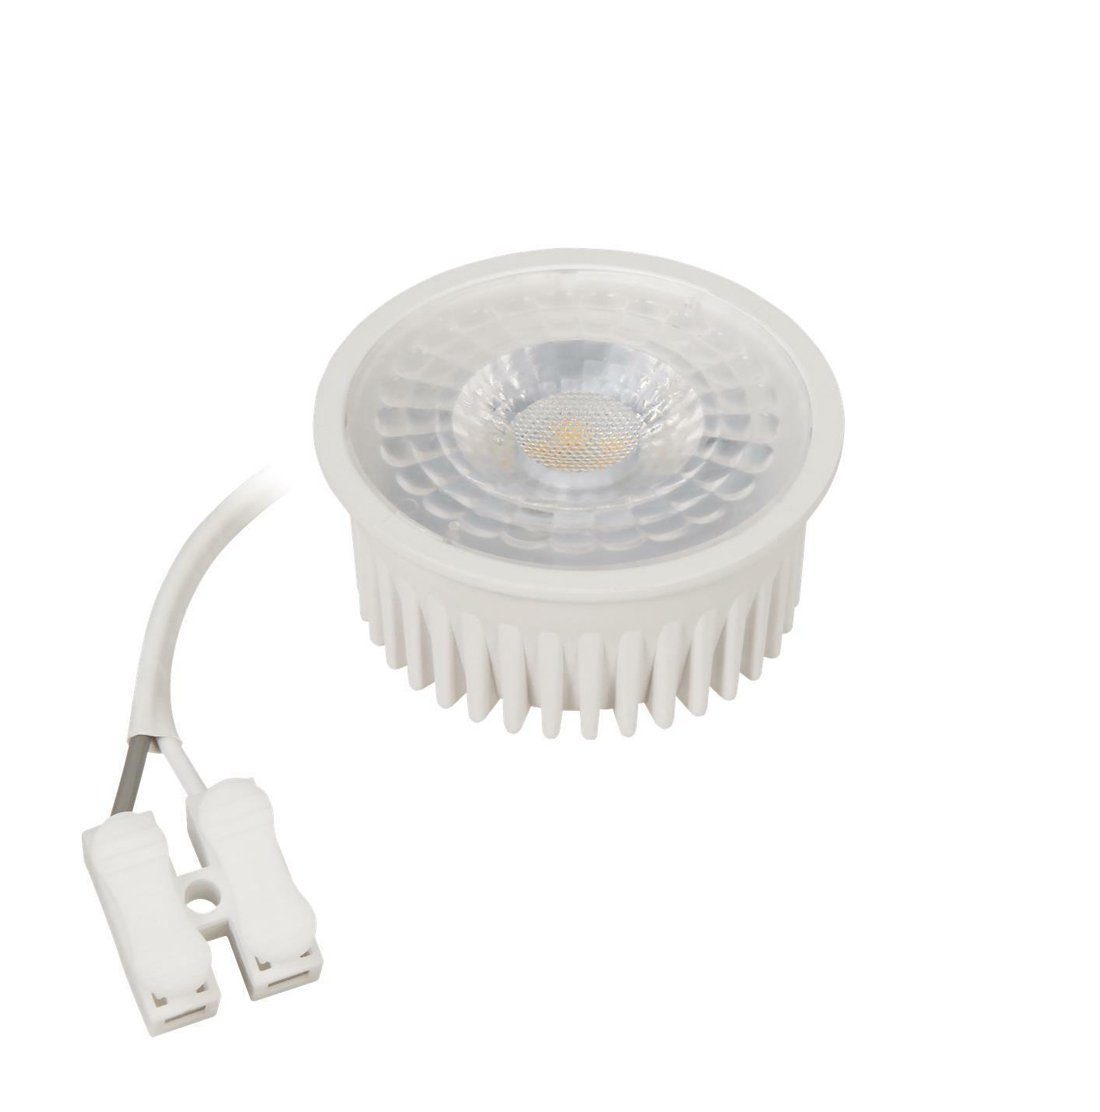 McShine LED-Leuchtmittel 5W LED Modul Leuchtmittel Lampe Einbaustrahler, Warmweiß, Extra Flache Alternative für GU10 und MR16, Abstrahlwinkel 36°, 230V COB LED, 350 Lumen, Warmeslicht